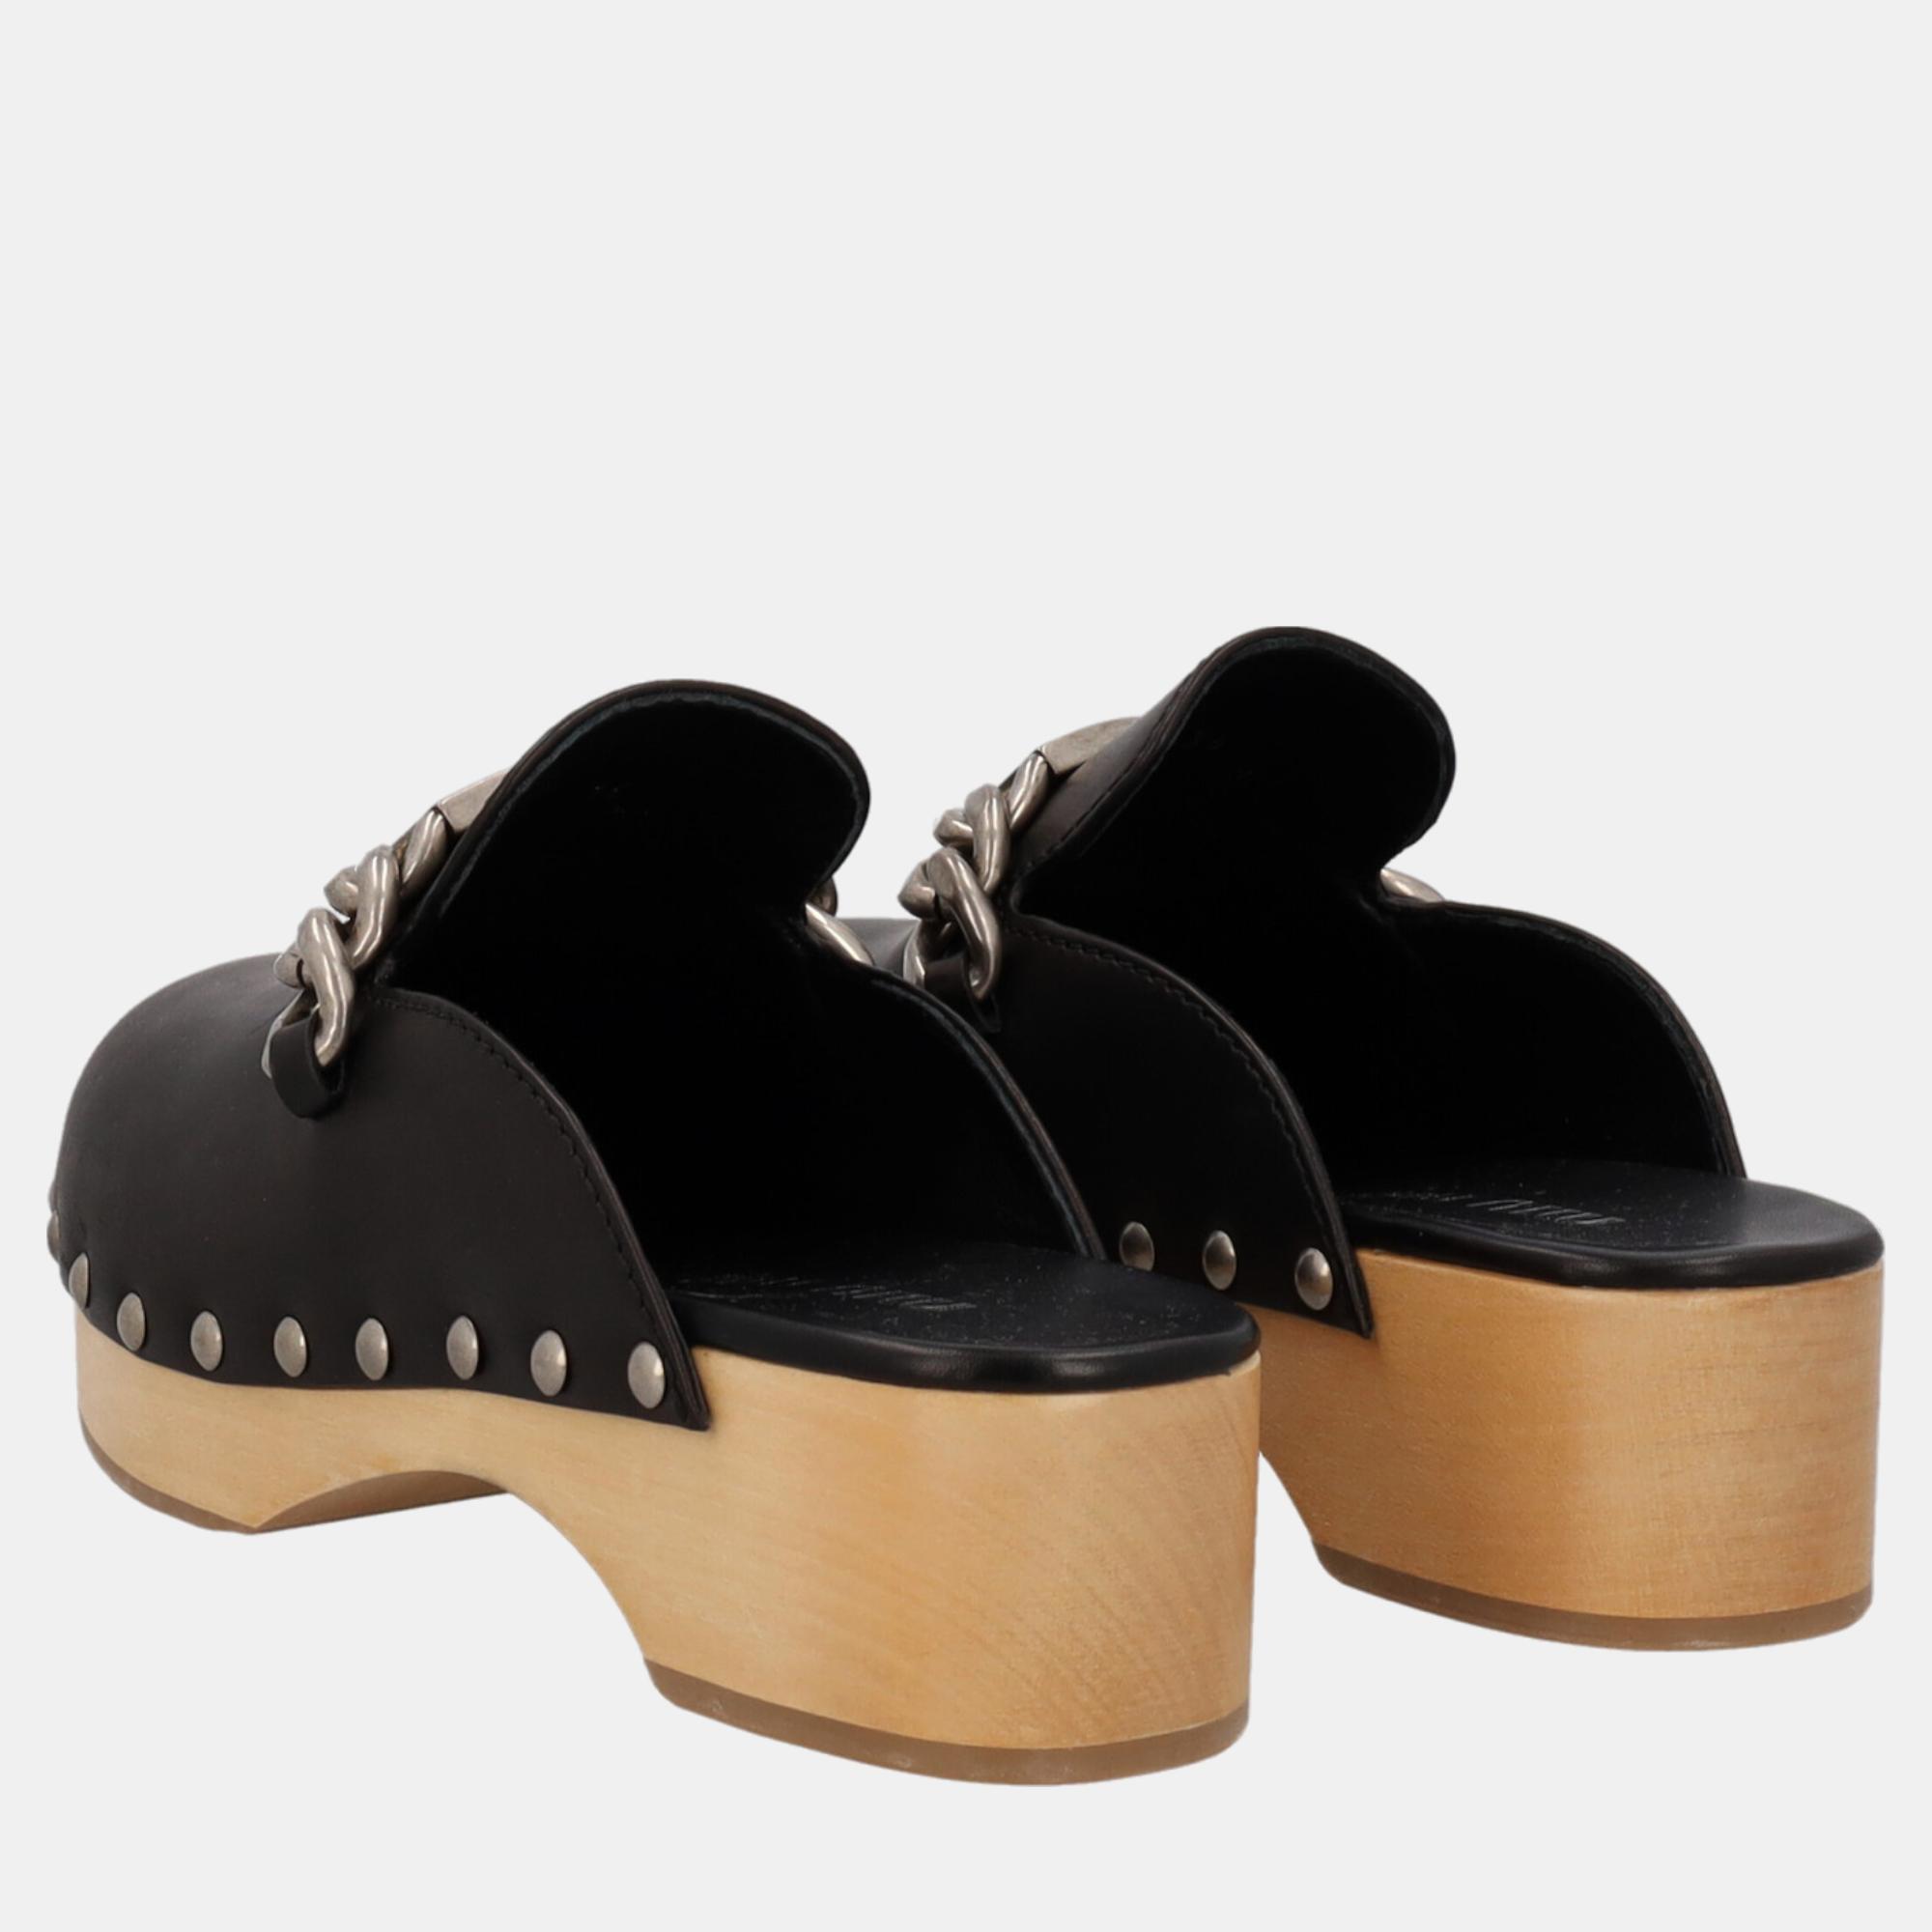 Miu Miu  Women's Leather Slippers - Black - EU 36